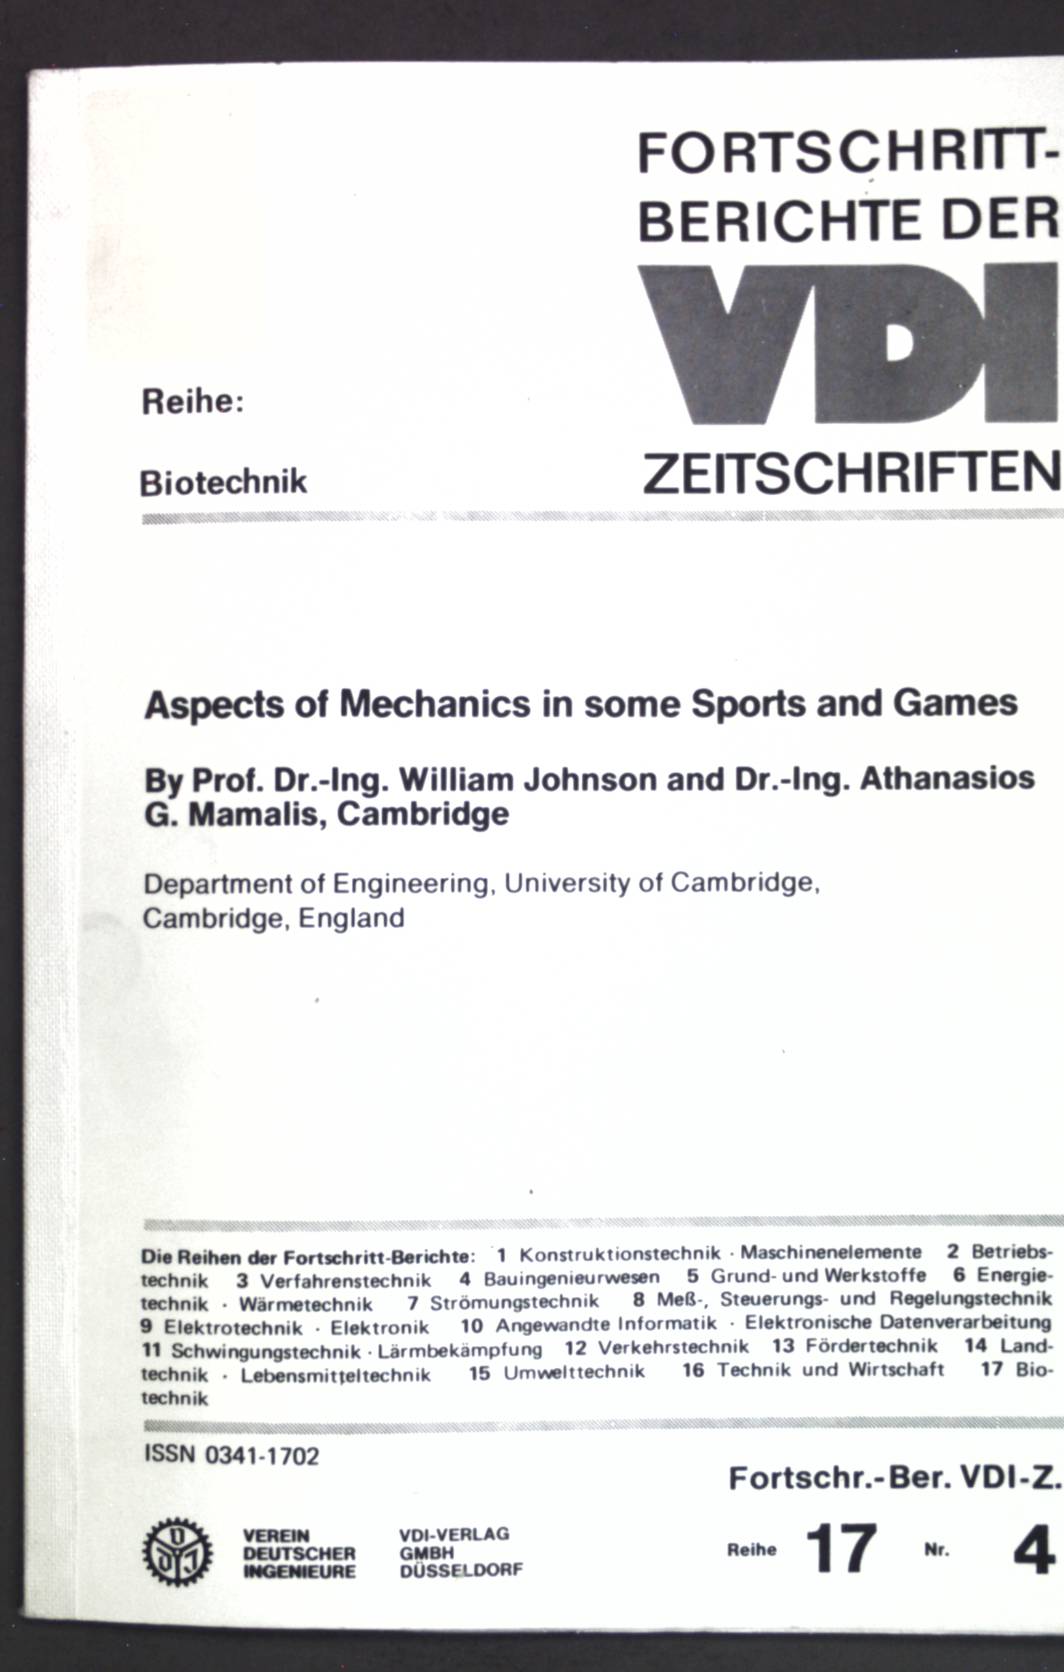 Aspects of mechanics in some sports and games / Aspekte der Mechanik für einige Bewegungsspiele. Fortschrittberichte der VDI-Zeitschriften ; Nr. 4